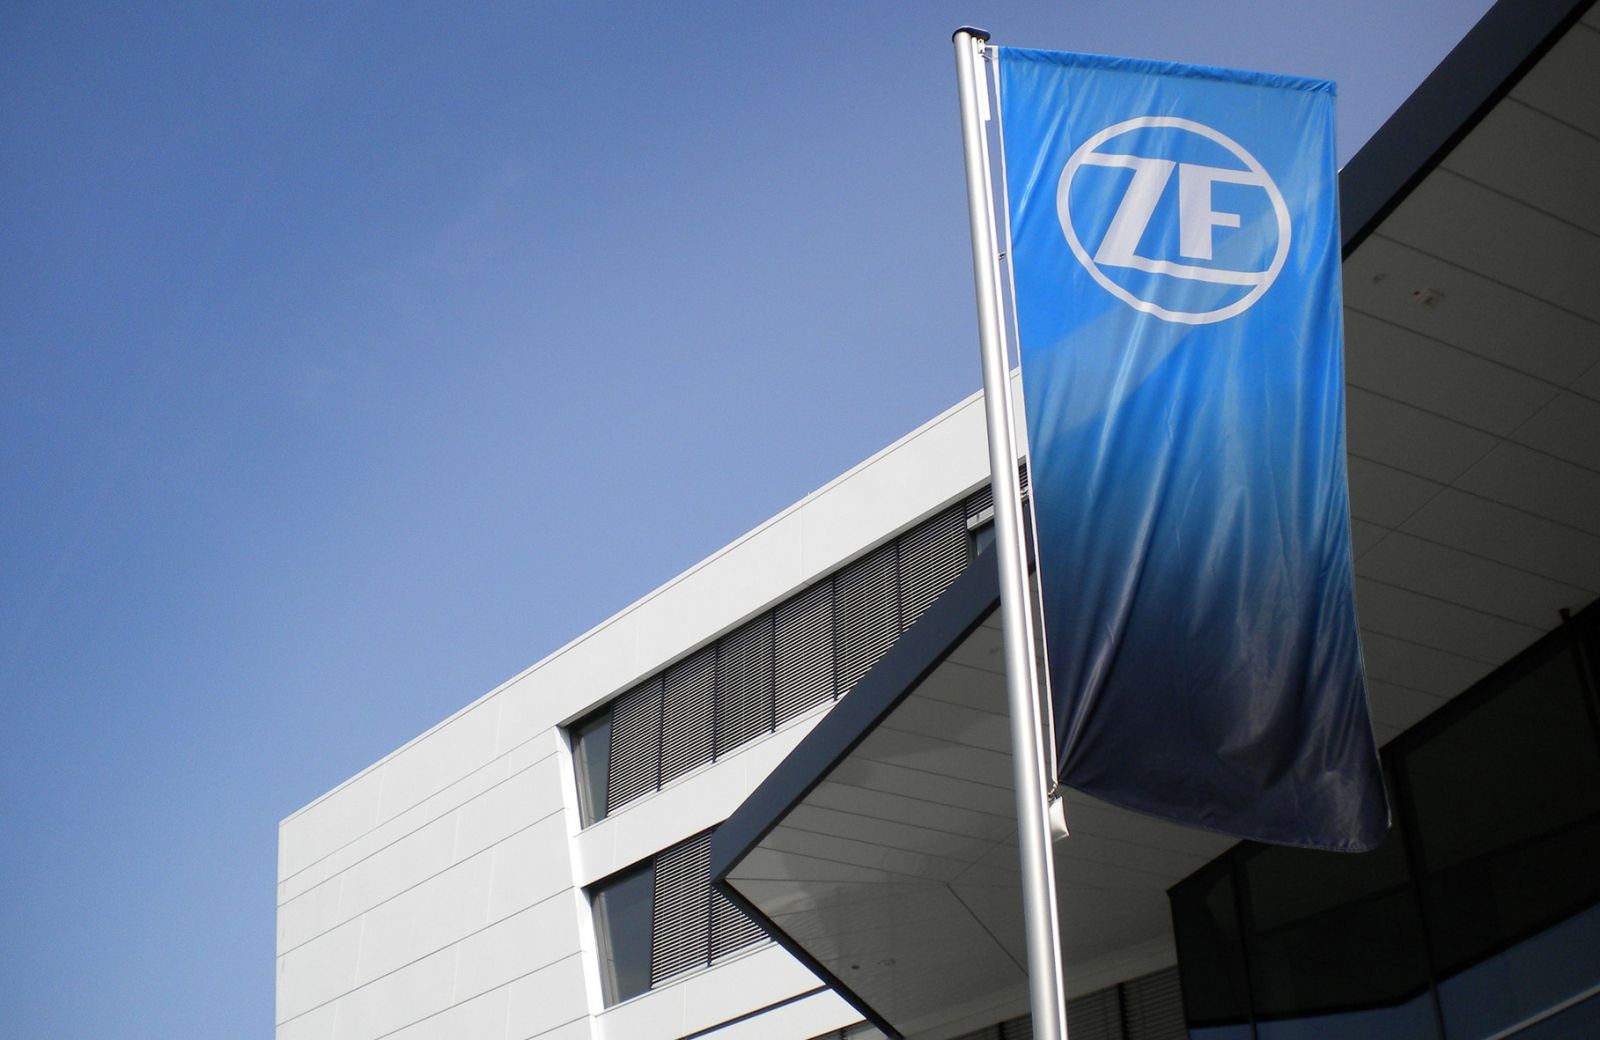 ZF ha concluso il primo semestre del 2021 con dati positivi in termini di fatturato e utili.